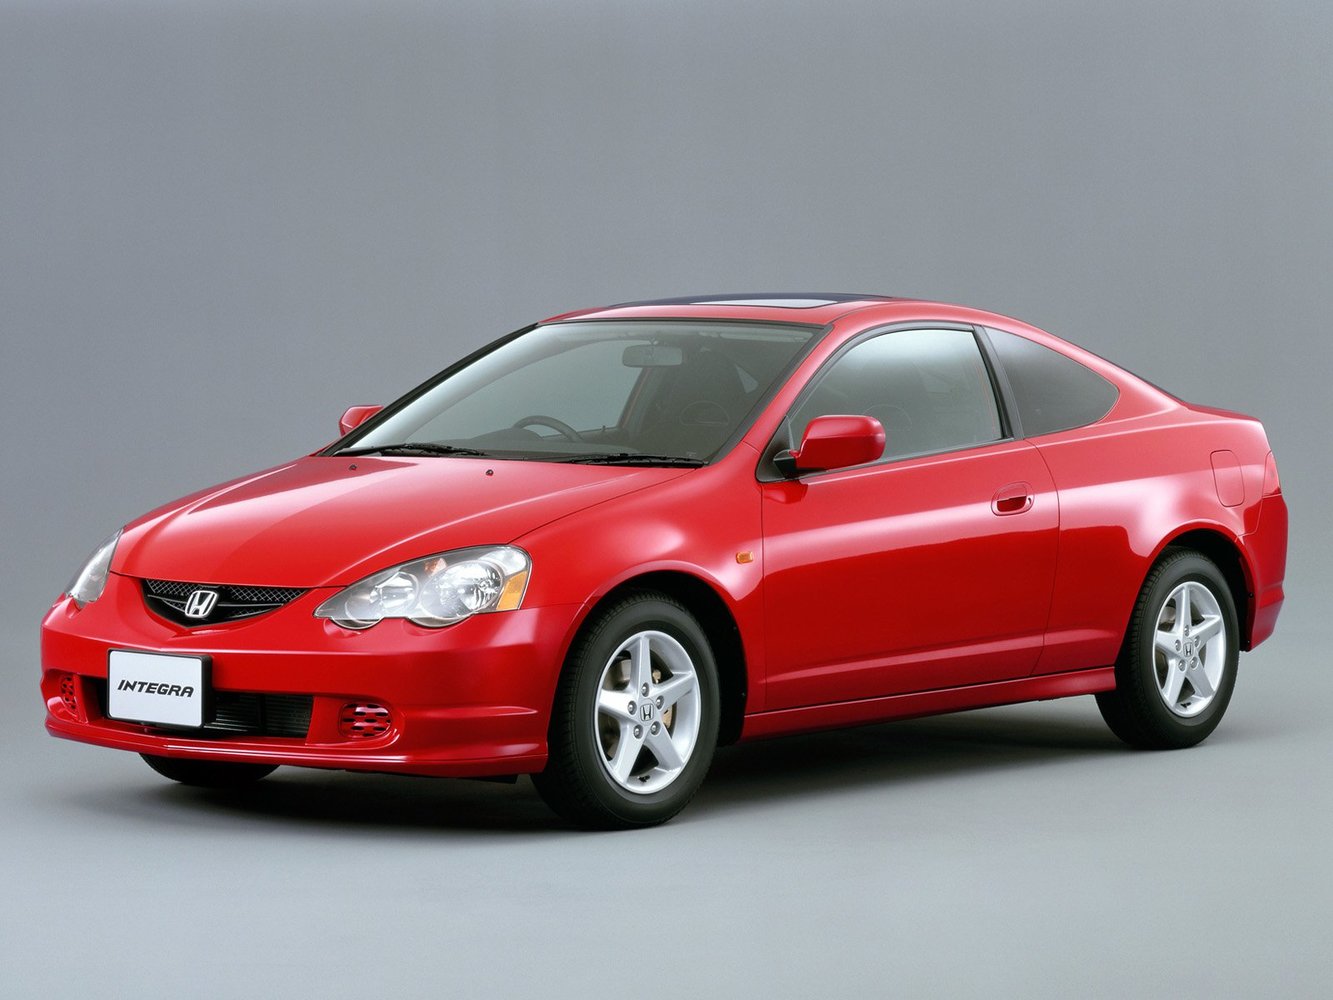 Honda Integra 2001 - 2004